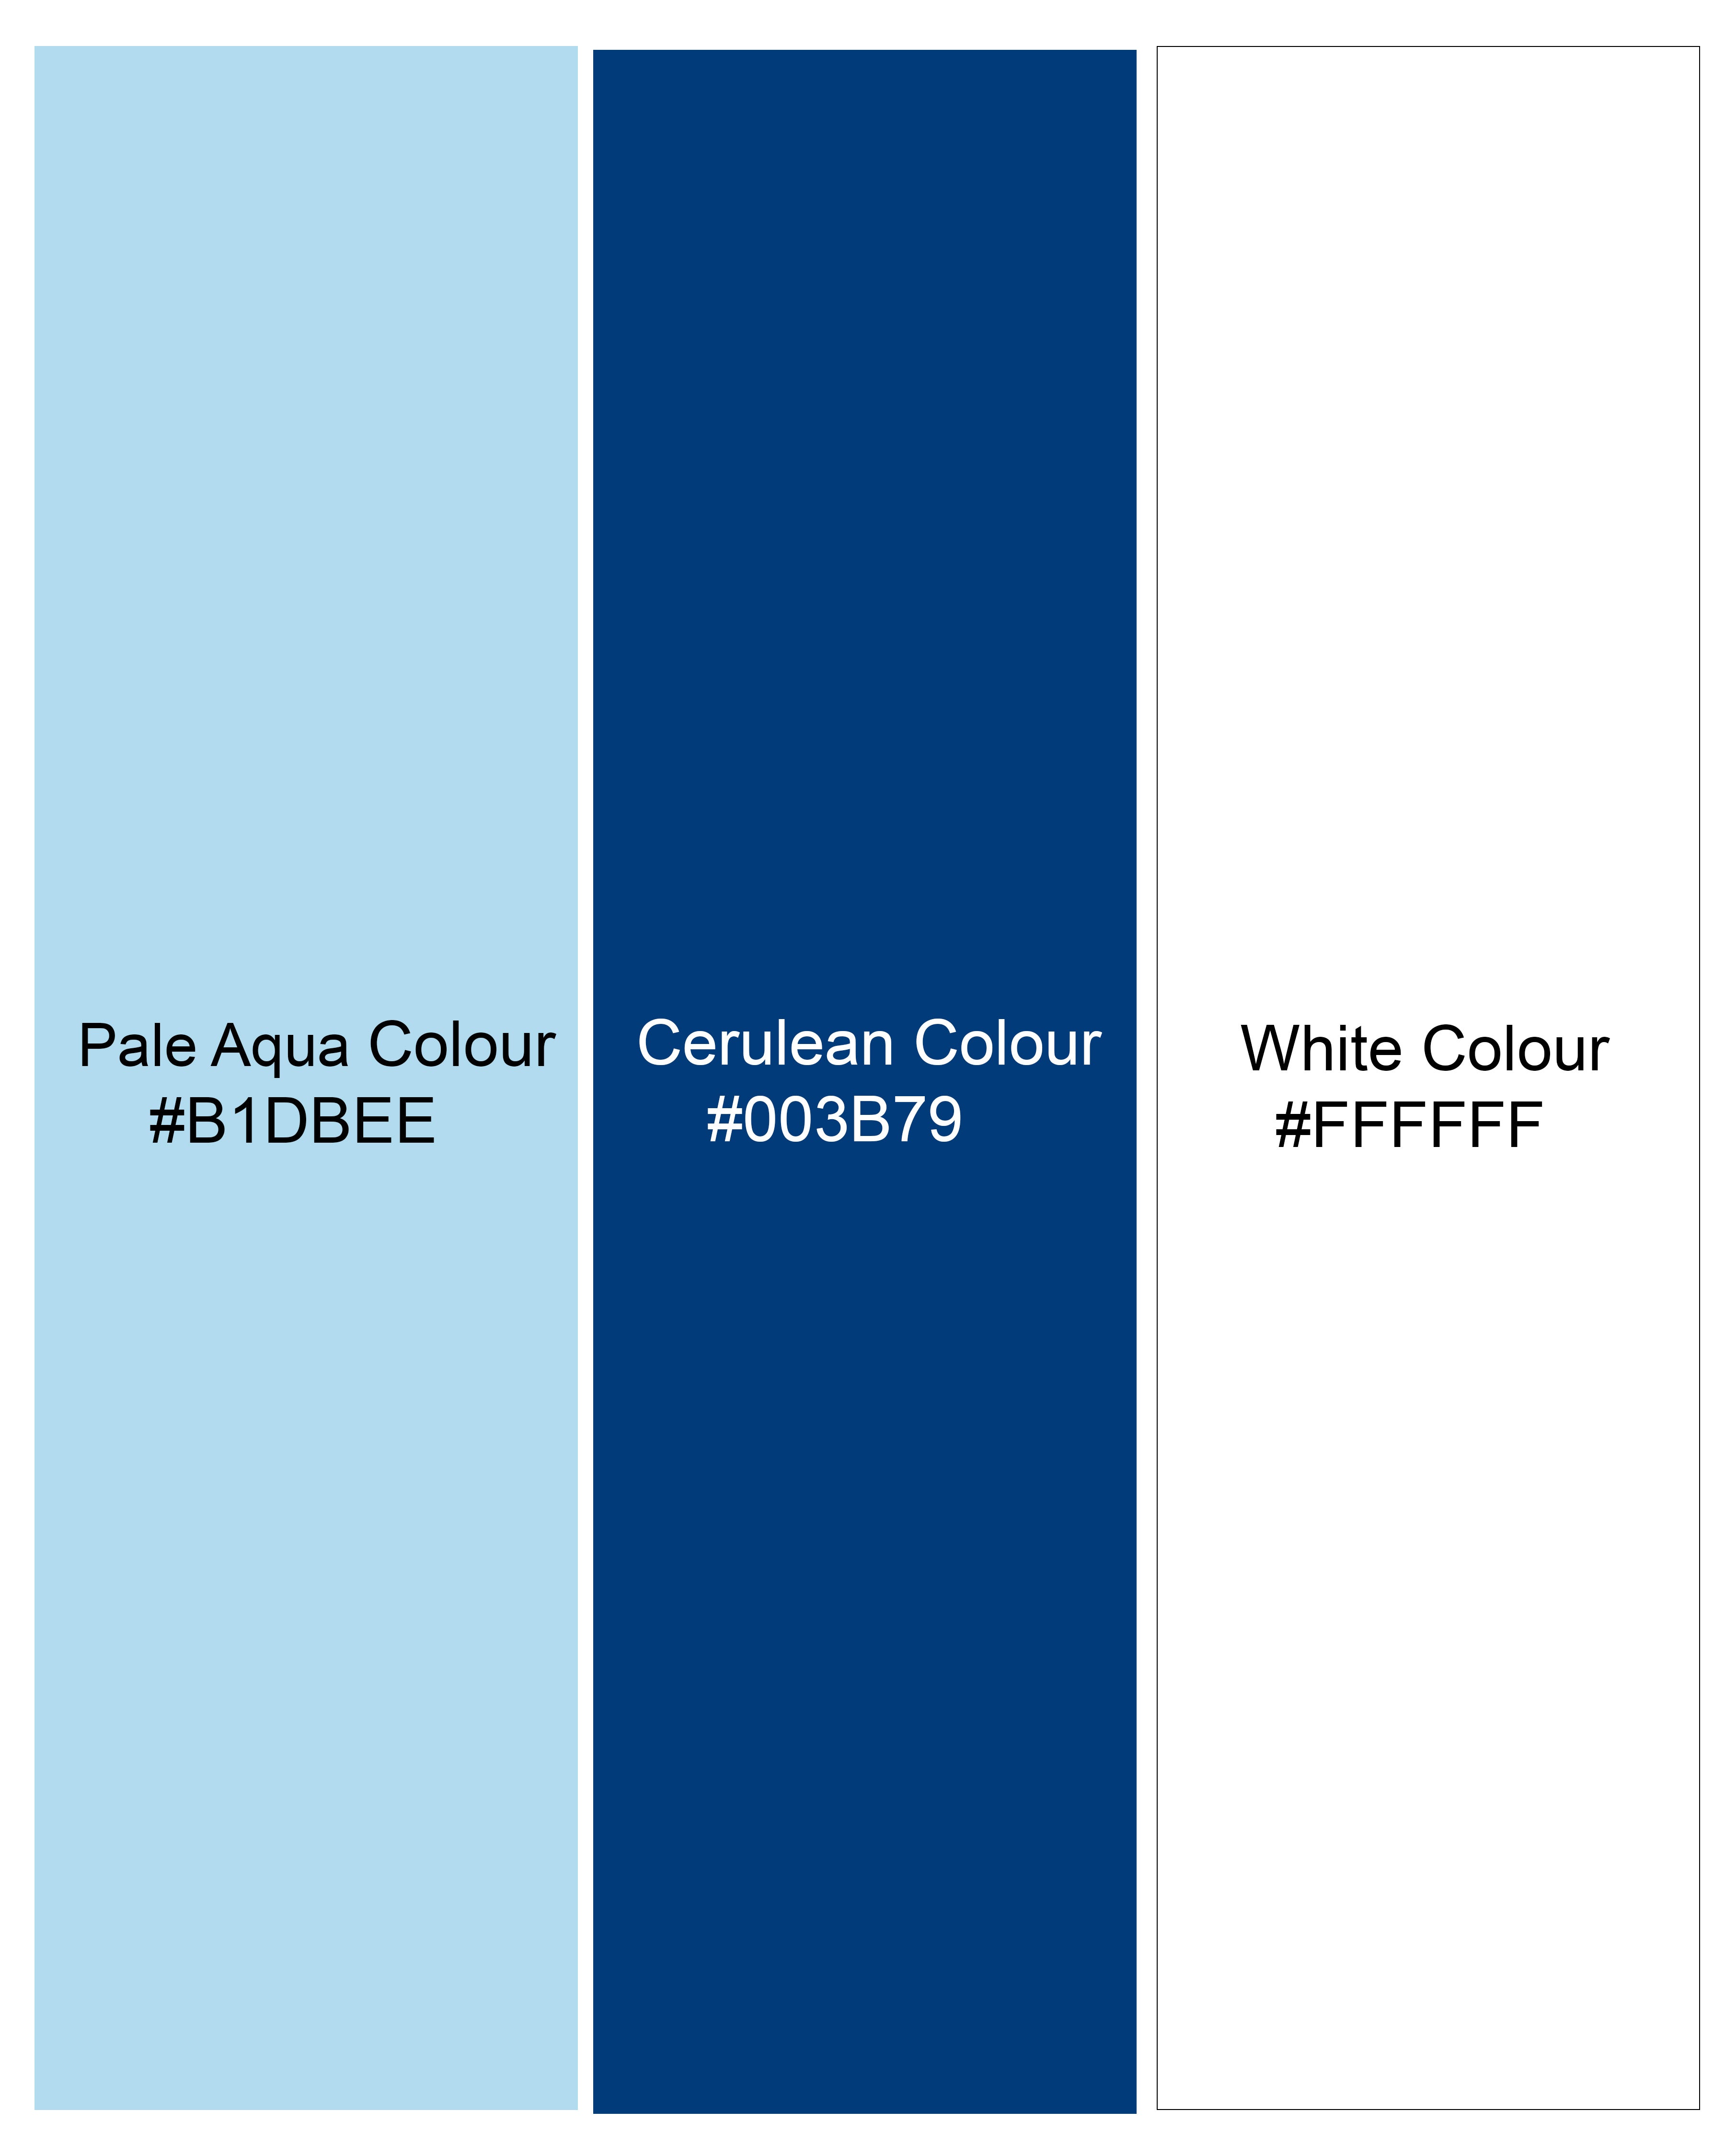 Pale Aqua Blue Striped Premium Cotton Shirt 9168-CA-38,9168-CA-H-38,9168-CA-39,9168-CA-H-39,9168-CA-40,9168-CA-H-40,9168-CA-42,9168-CA-H-42,9168-CA-44,9168-CA-H-44,9168-CA-46,9168-CA-H-46,9168-CA-48,9168-CA-H-48,9168-CA-50,9168-CA-H-50,9168-CA-52,9168-CA-H-52